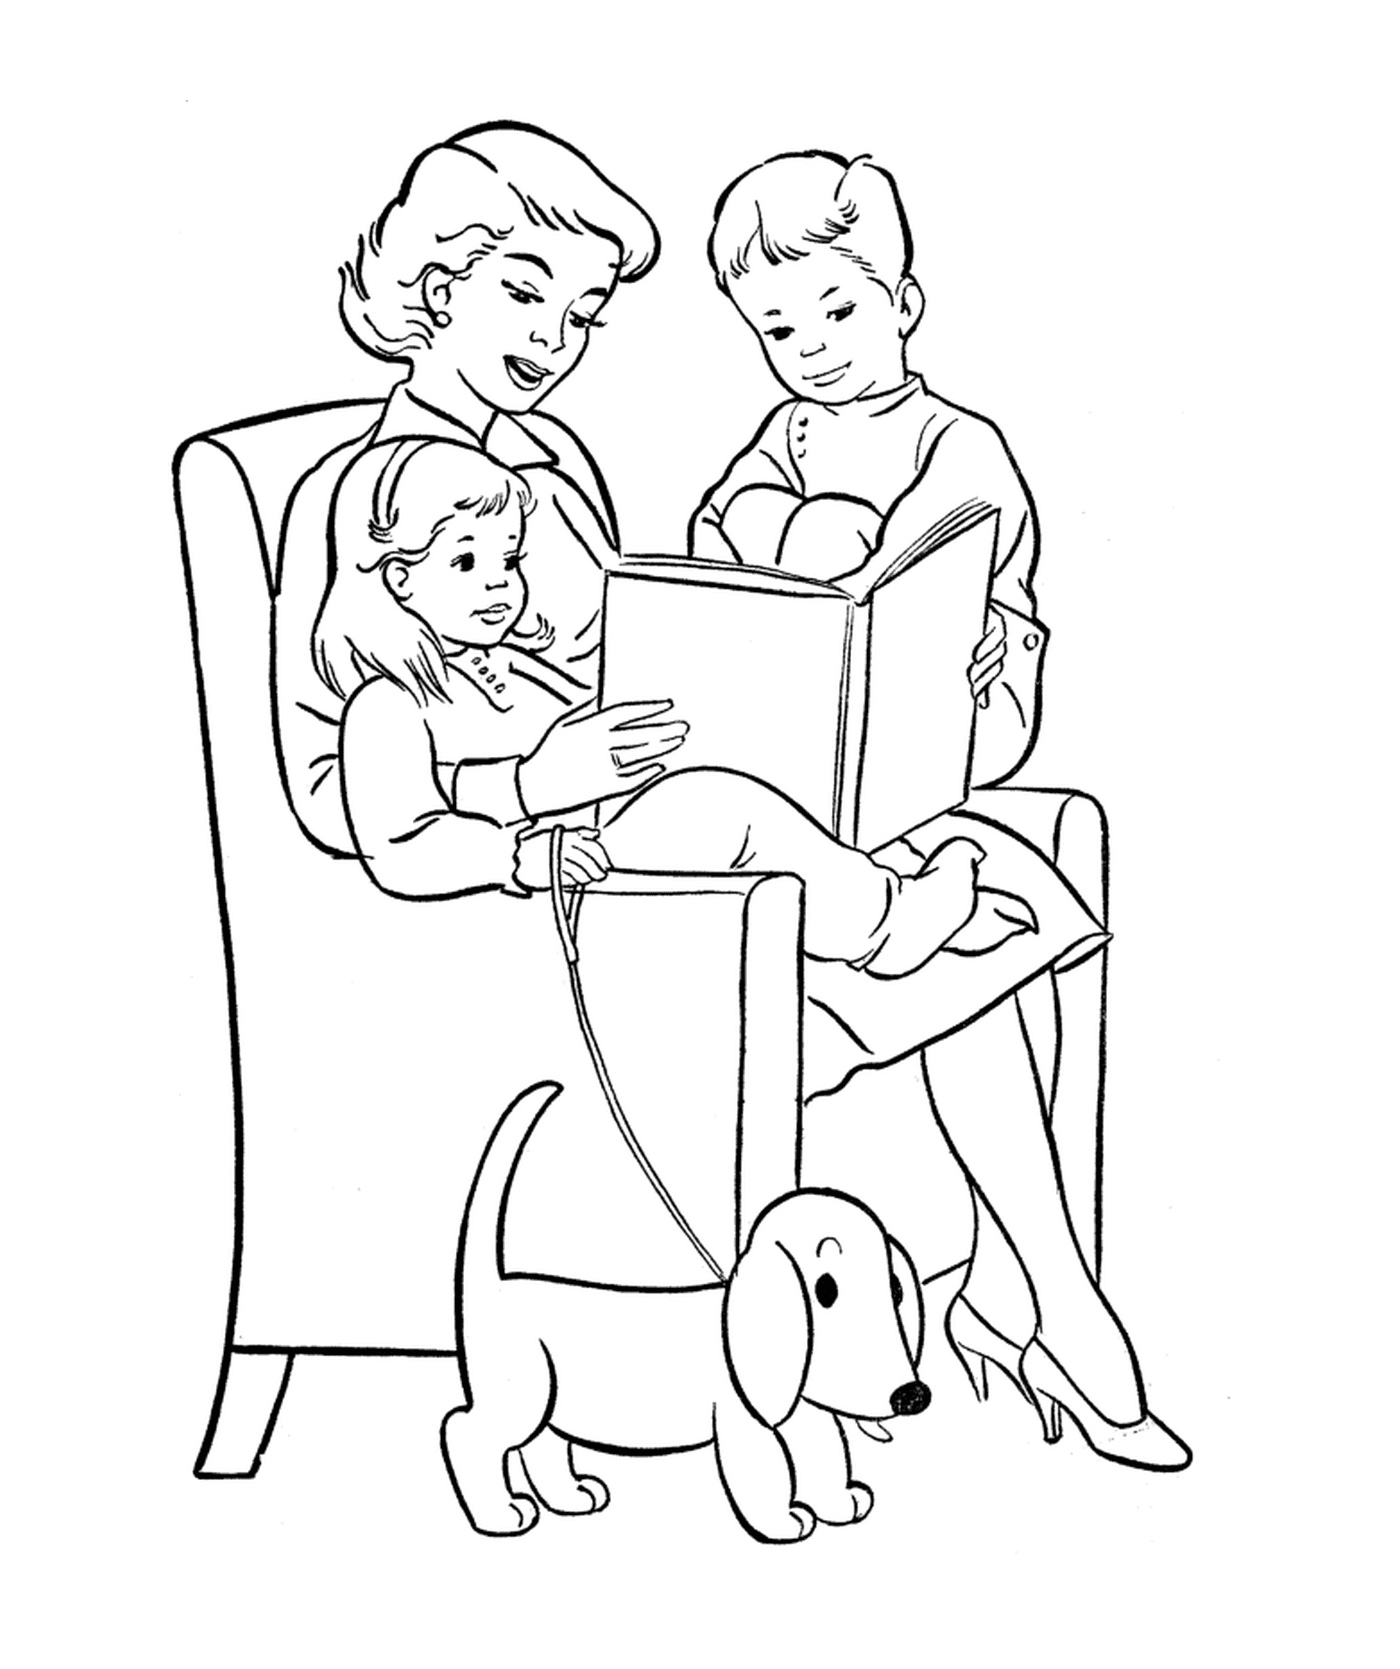   Une femme lisant un livre à deux enfants 